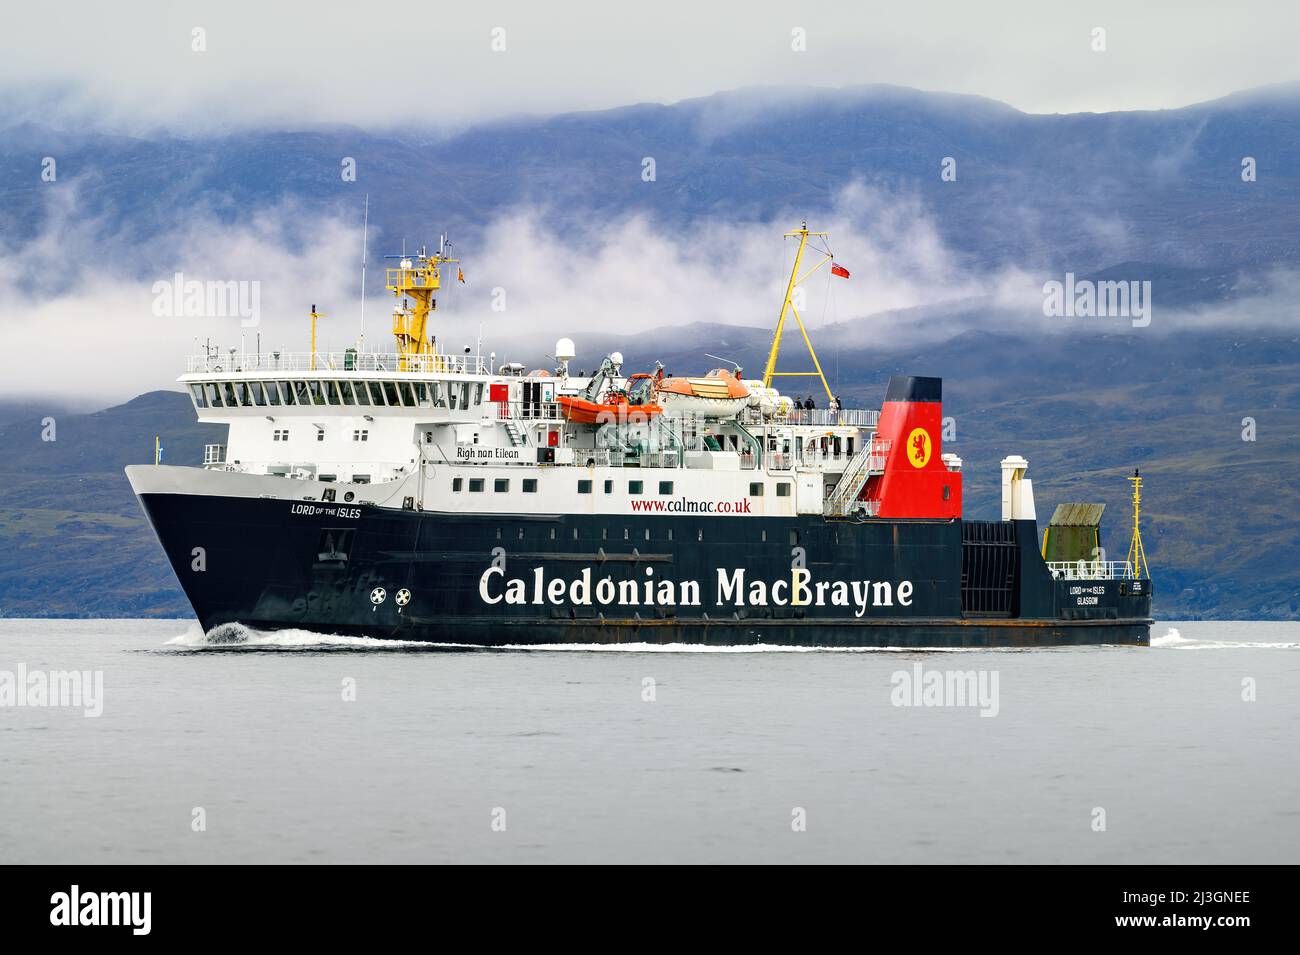 Lord of the Isles ist eine Fähre, die von Caledonian MacBrayne auf den Routen zwischen den Inseln und dem Festland in Schottland - Oktober 2021 - betrieben wird. Stockfoto